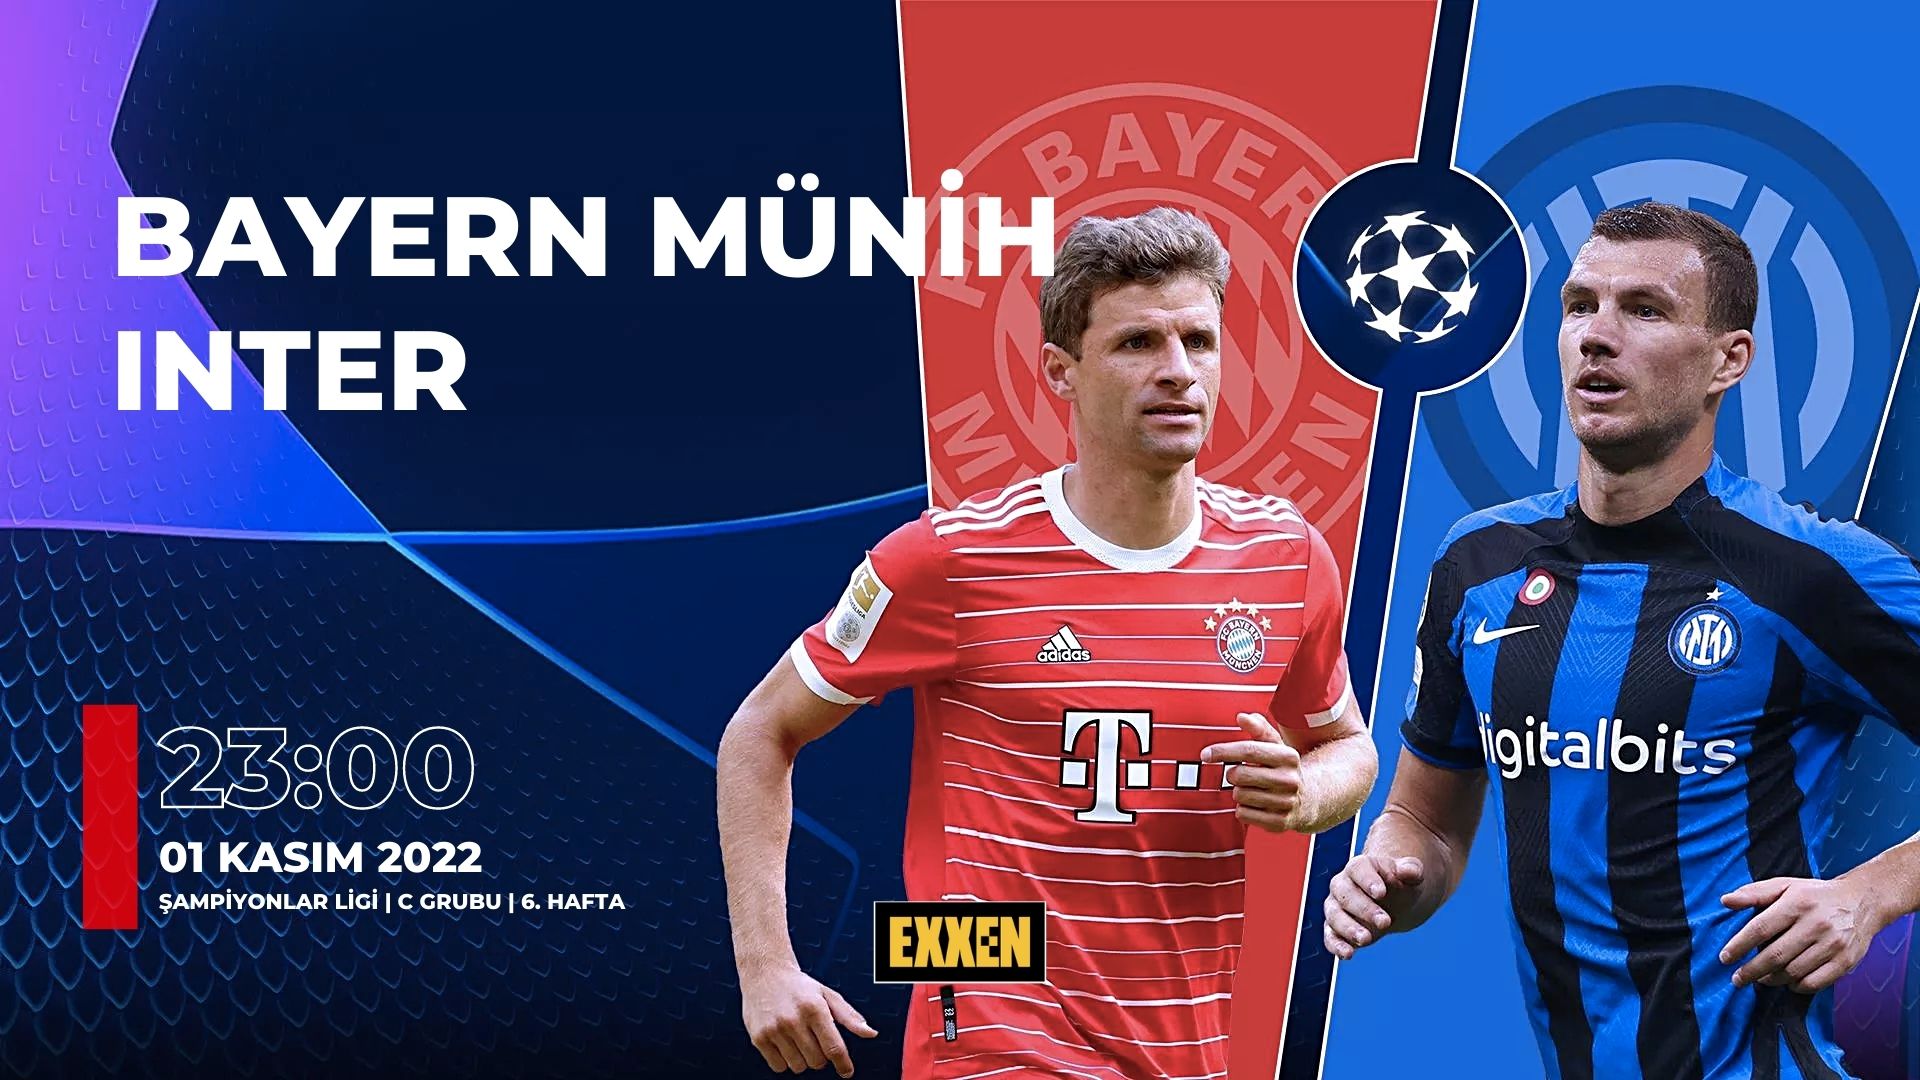 CANLI | Bayern Münih – Inter UEFA Şampiyonlar Ligi Maçı Canlı İzle (Exxen)